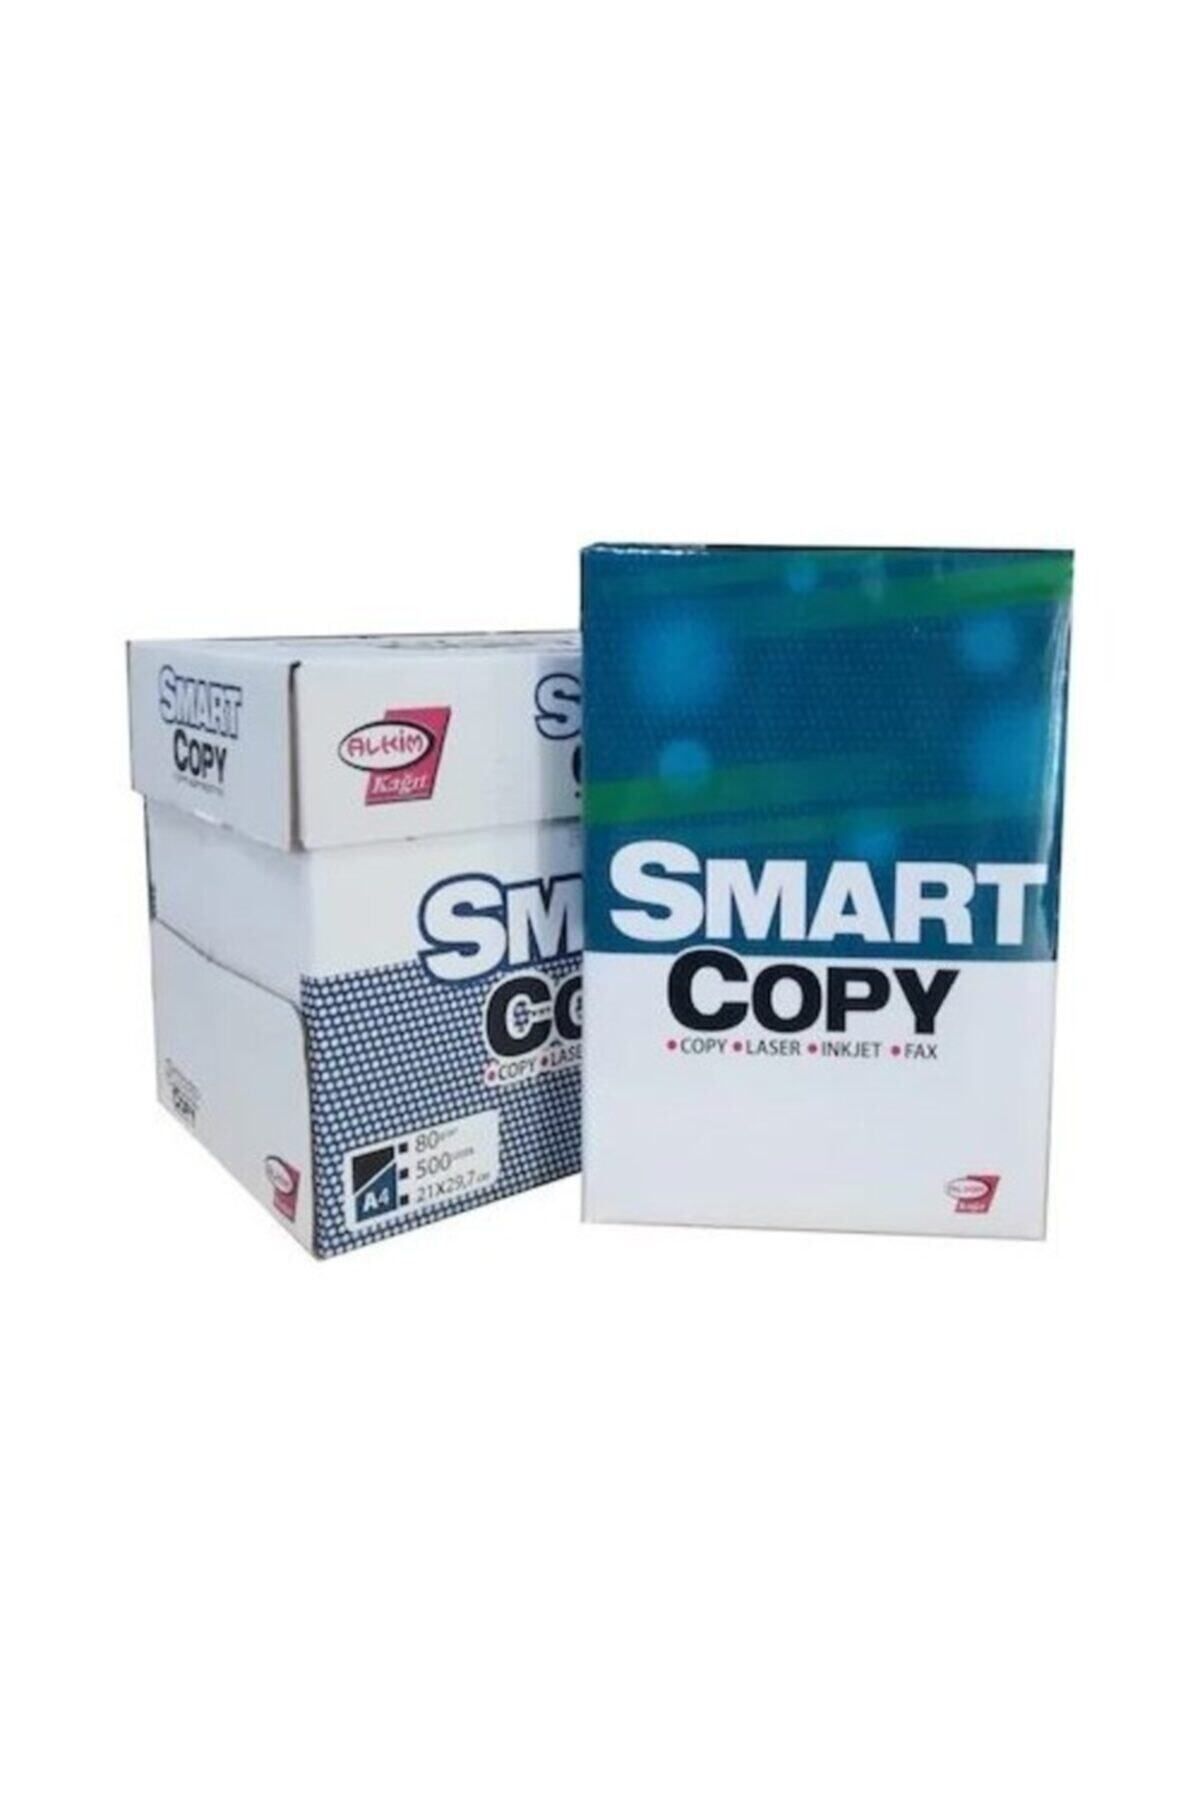 Alkim Kağıt Smart Copy Fotokopi Kağıdı A4 80 g